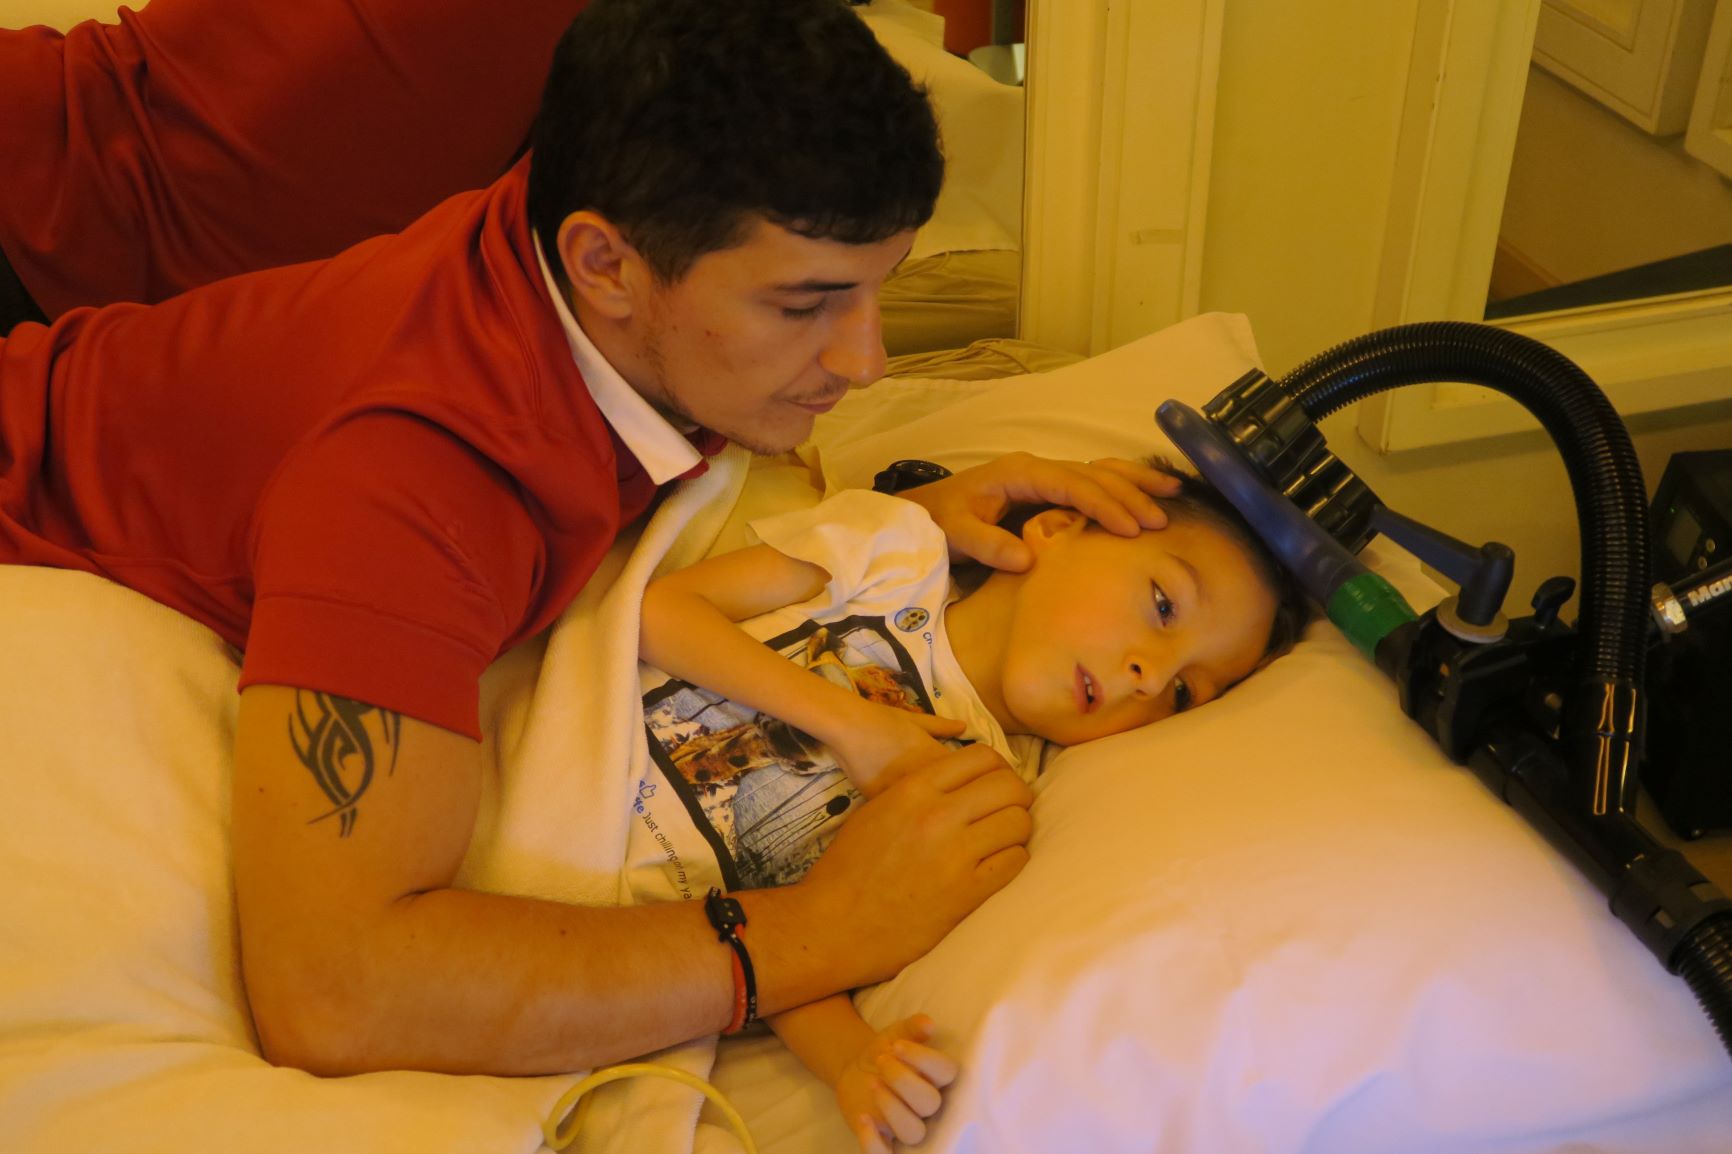 Copilul cu Paralizia Cerebrala vede îmbunătățiri, decide să se întoarcă